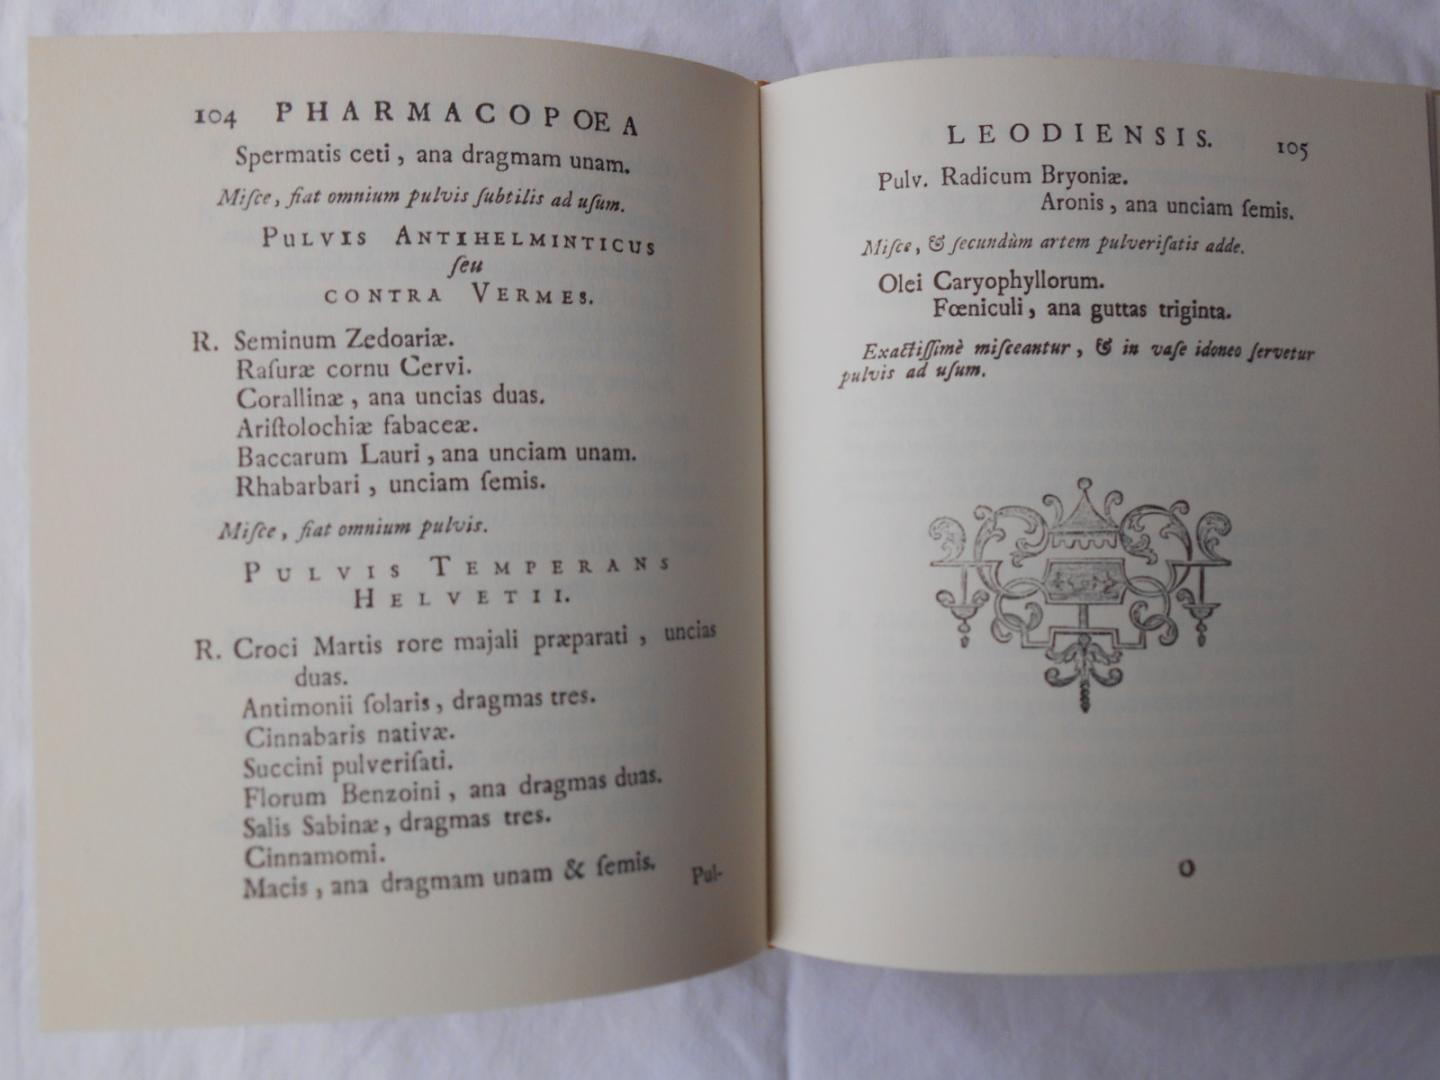 Vandewiele, L.J. (voorwoord) - Pharmacopoea Leodiensis, 1741, facsimile - reprint